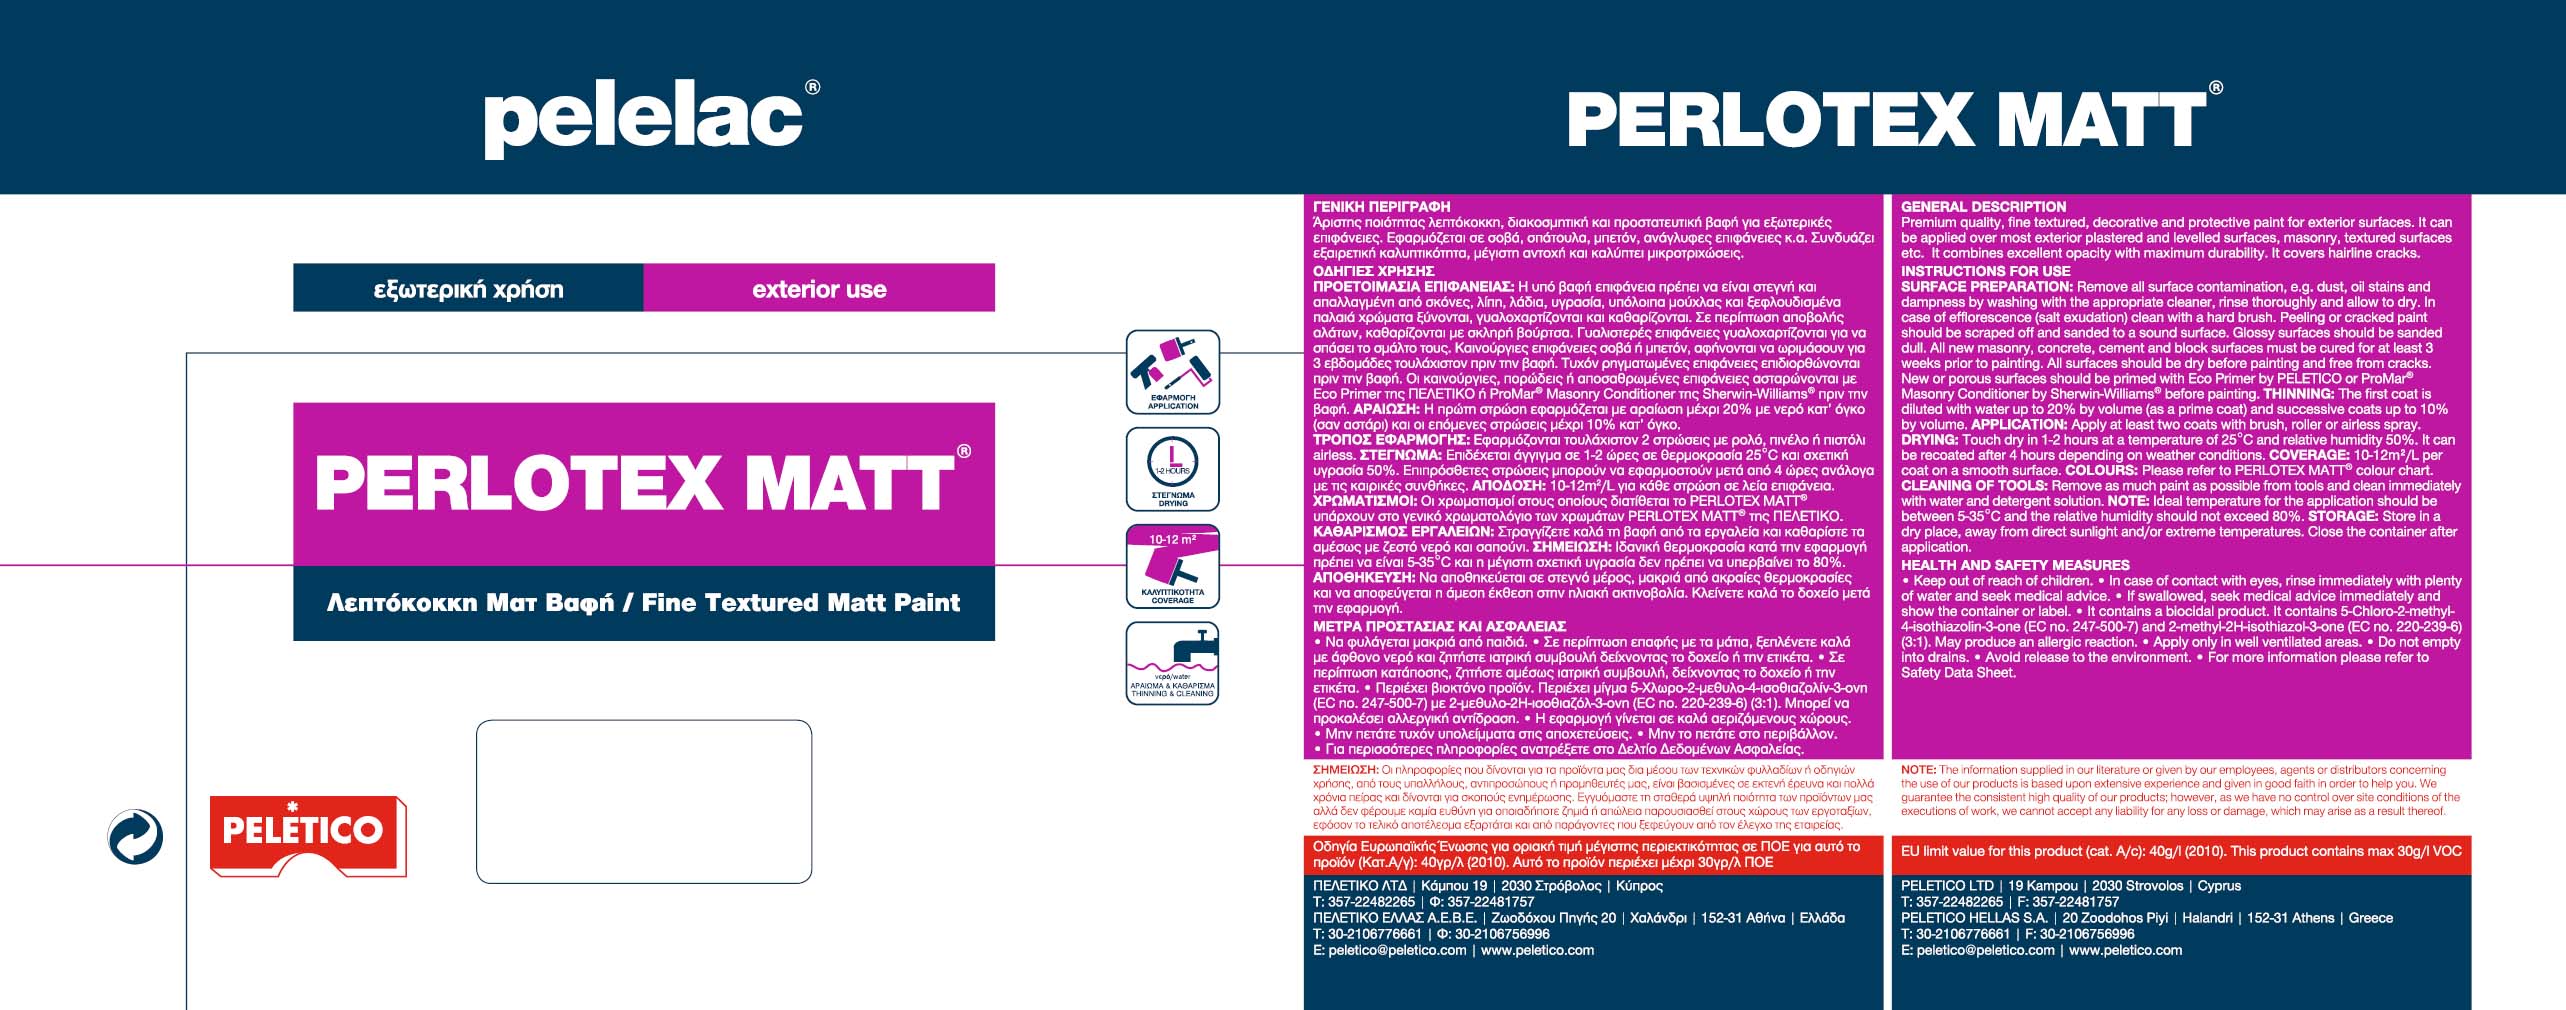 PELELAC PERLOTEX MATT® LIGHT OCHRE M9 1L